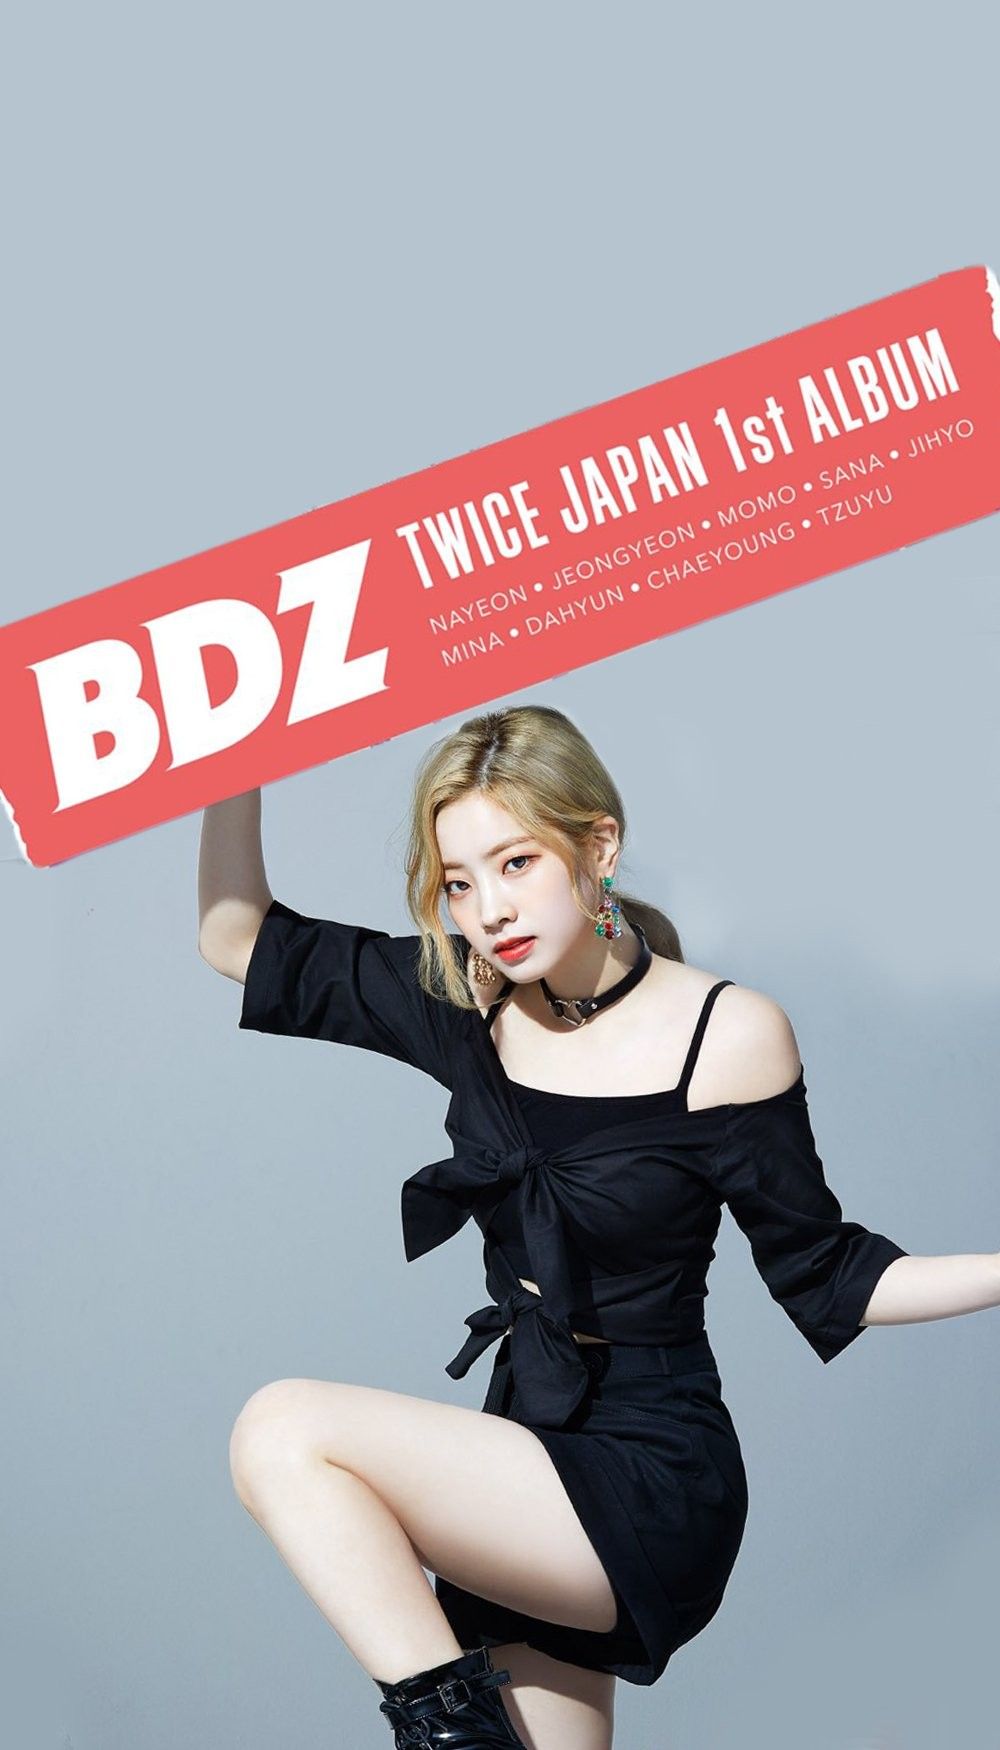 Twice Bdz Wallpaper Japan Album Dahyun Kpop